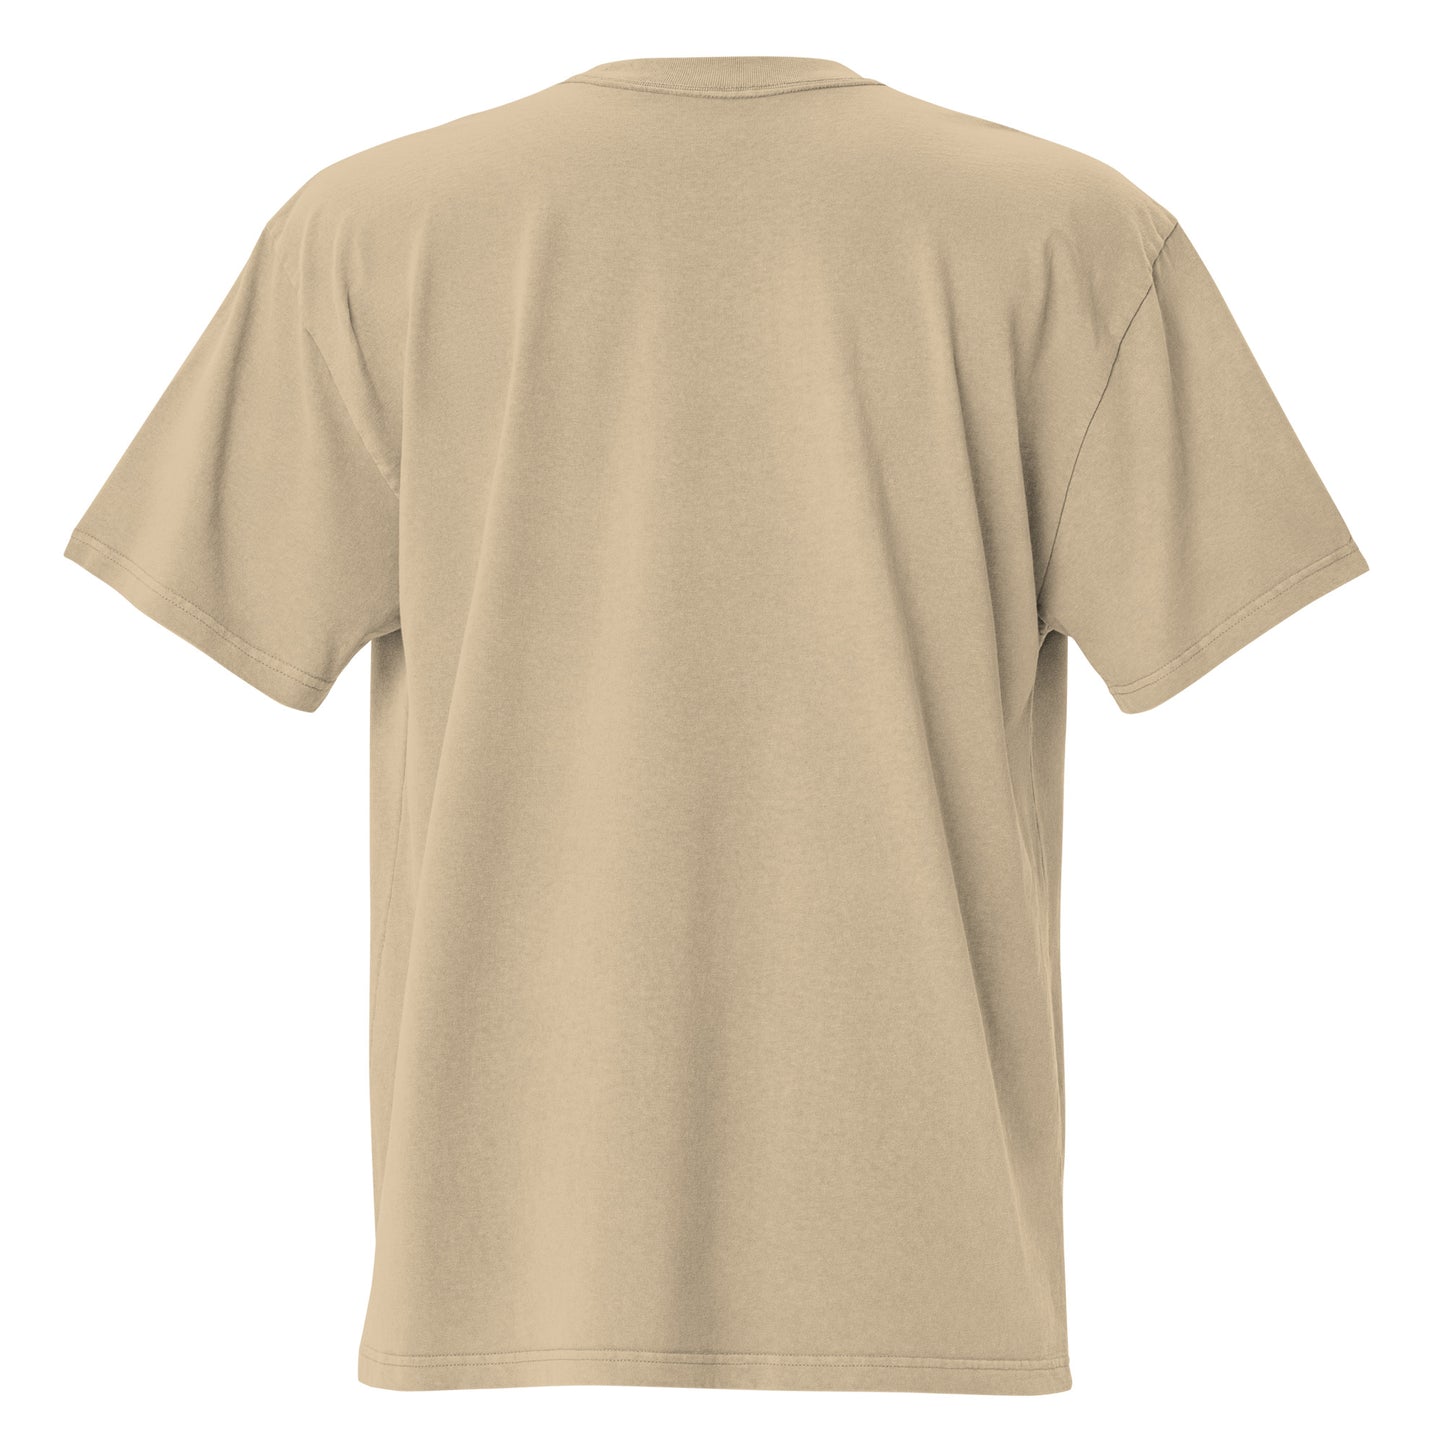 Oversized T-Shirt mit verwaschenem Look 501 Double Out 2.0